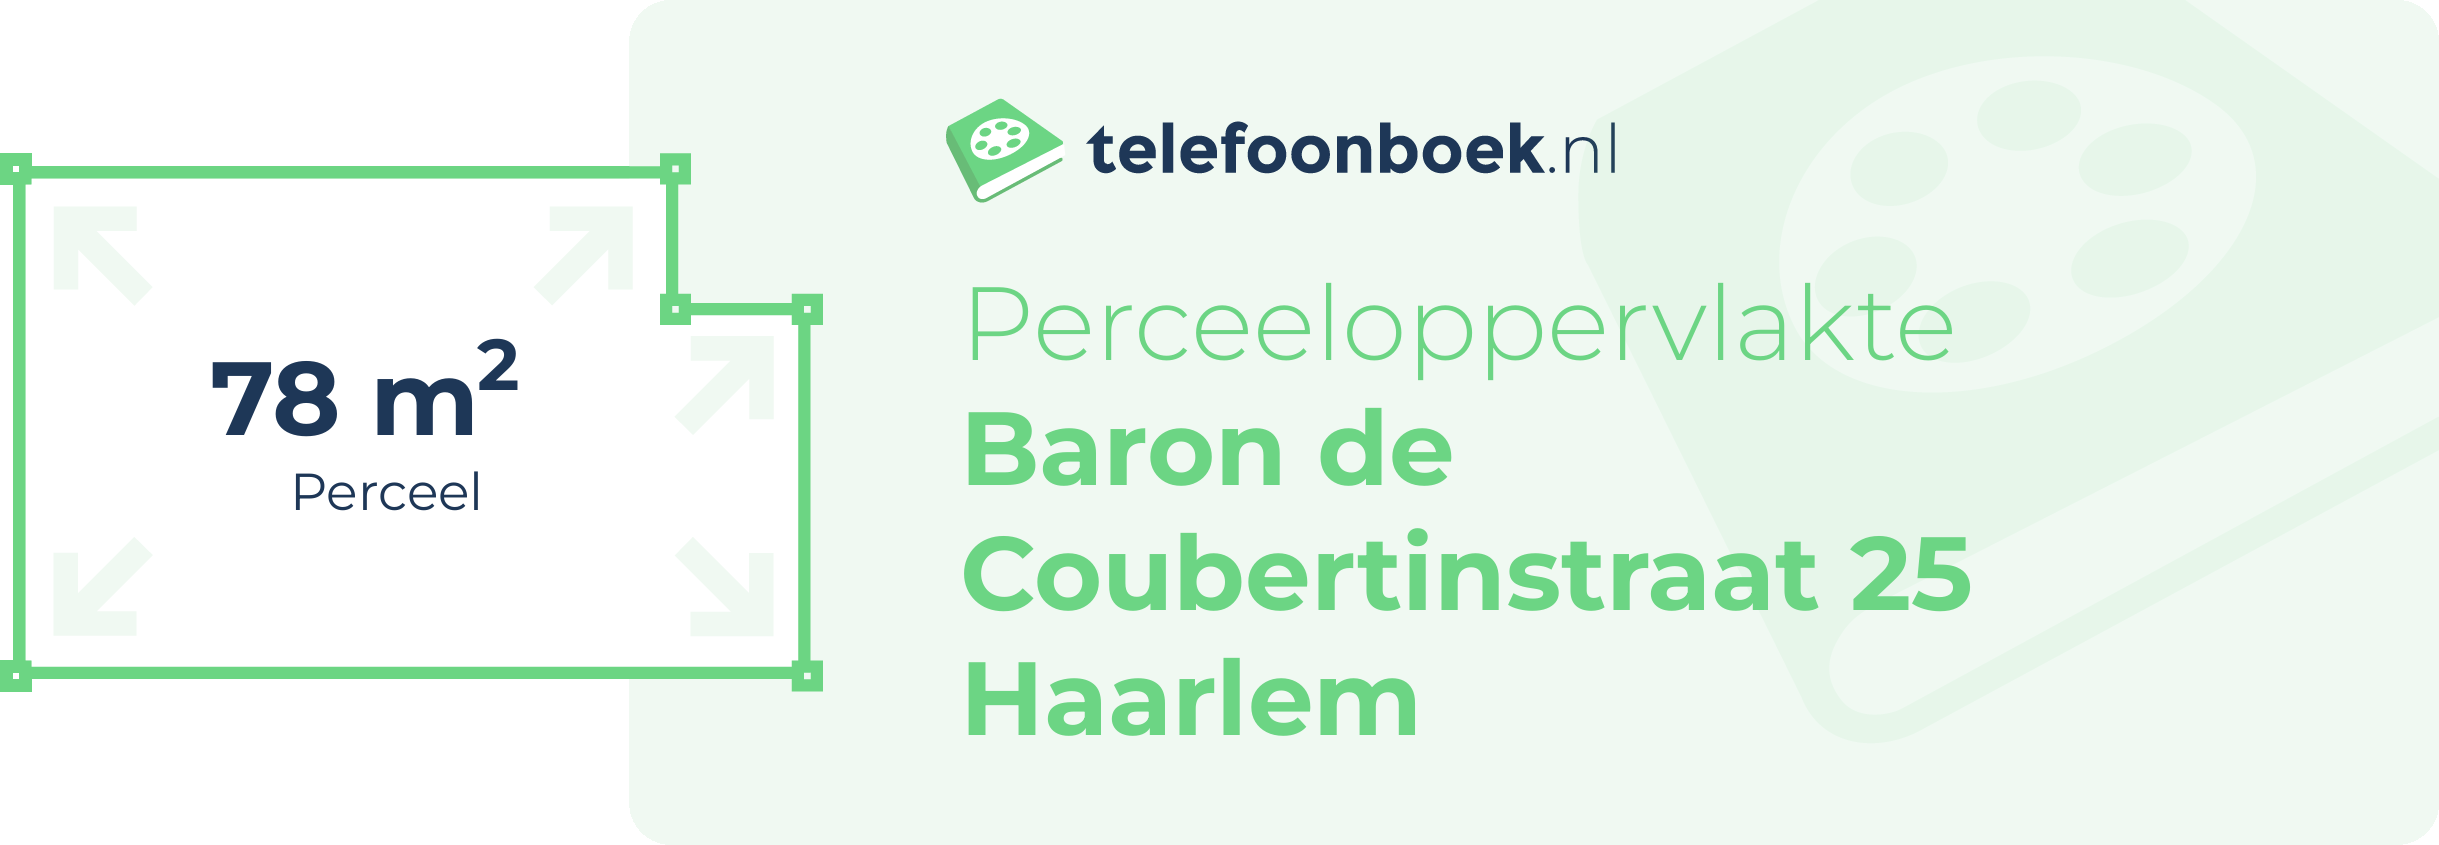 Perceeloppervlakte Baron De Coubertinstraat 25 Haarlem